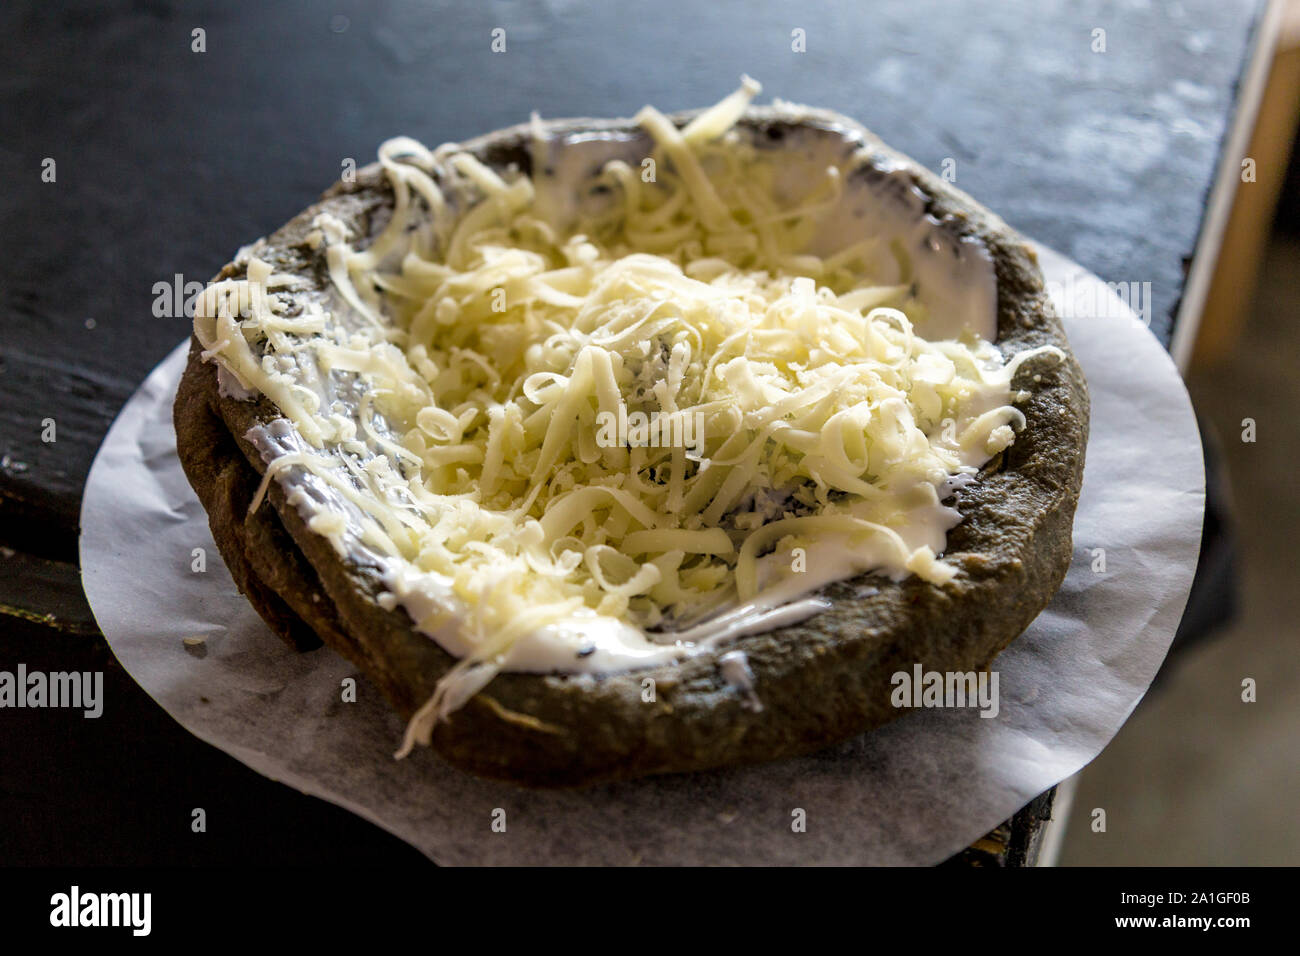 Cómo hacer tarta de queso cremosa: Receta original de Ditaly